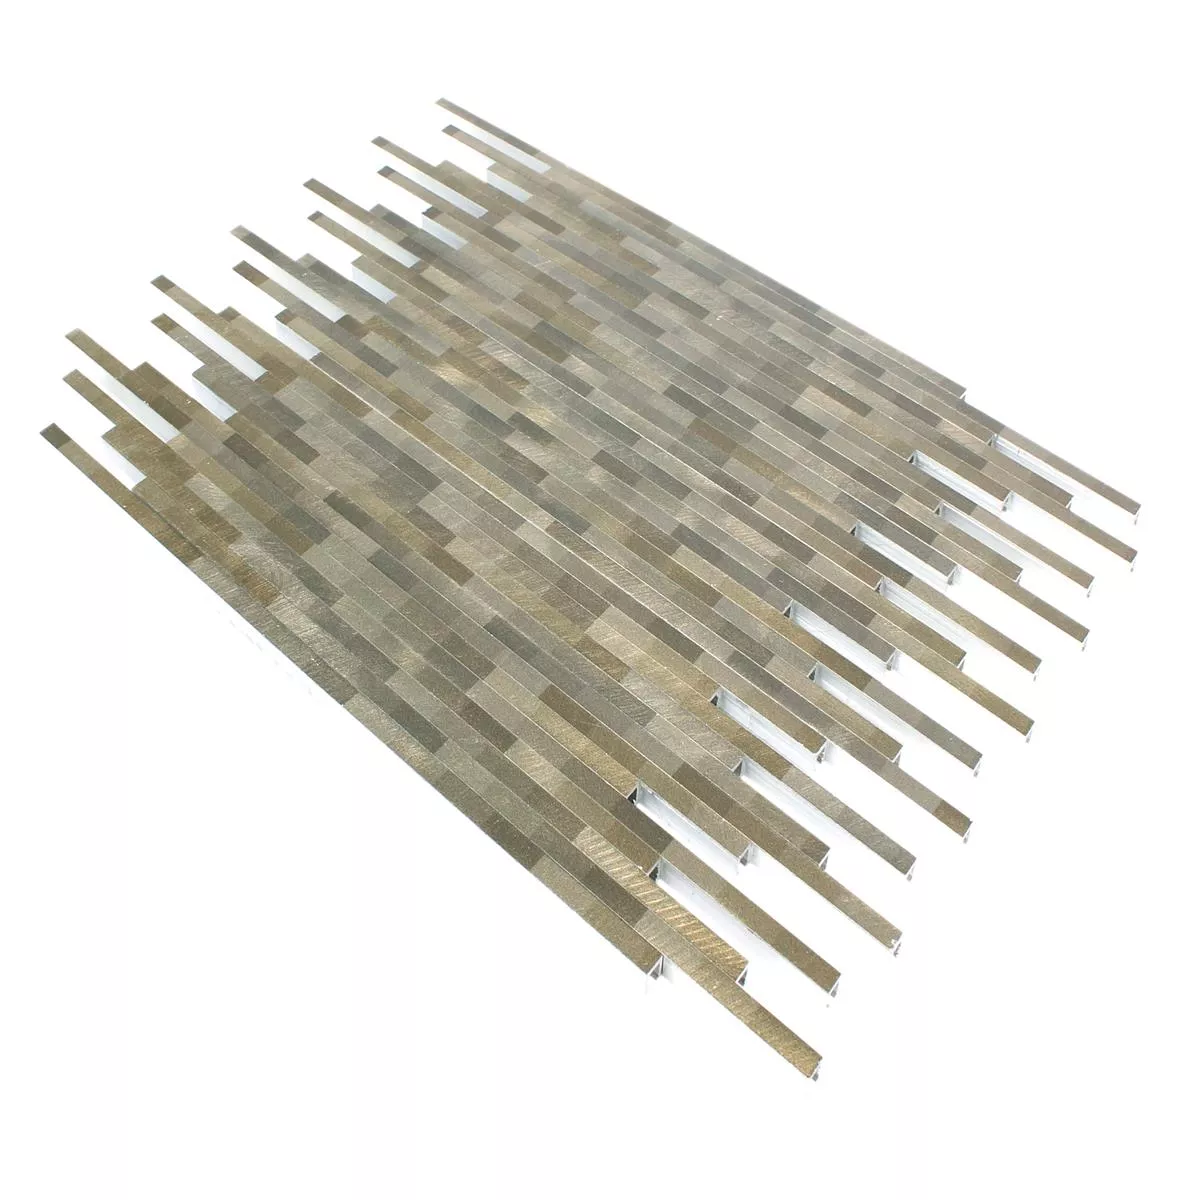 Muster von Mosaikfliesen Aluminium Wishbone Braun Beige